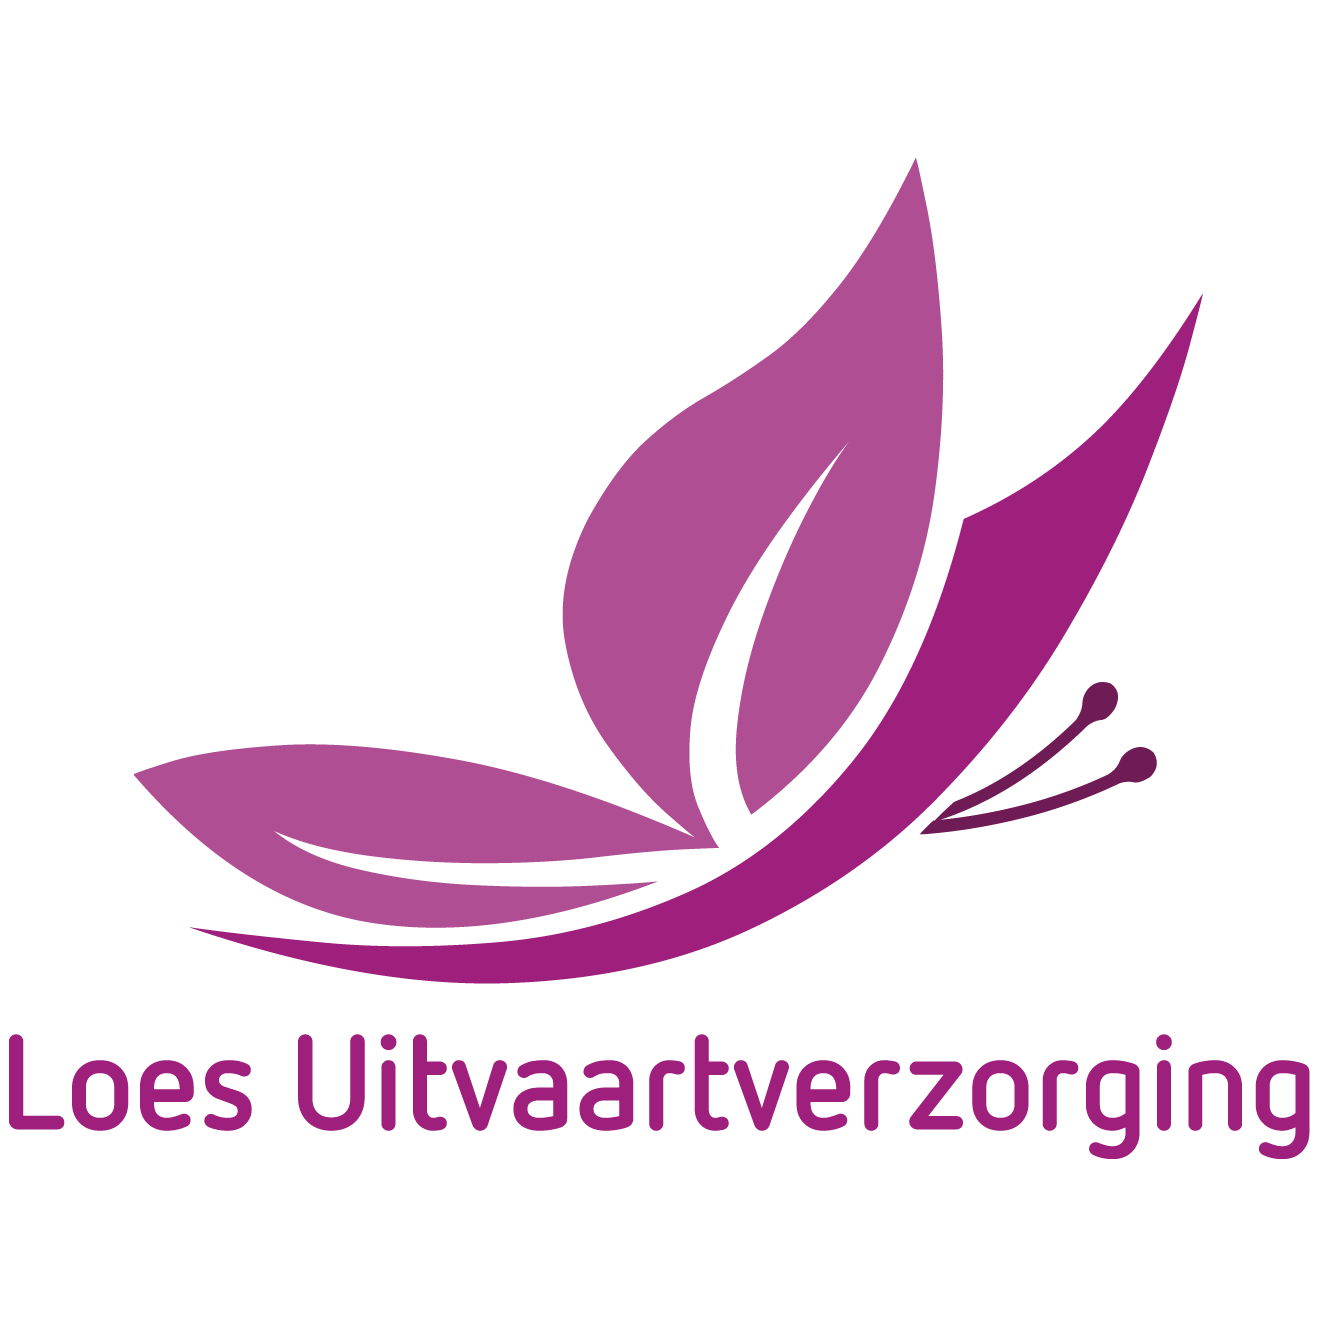 Loes Uitvaartverzorging Logo